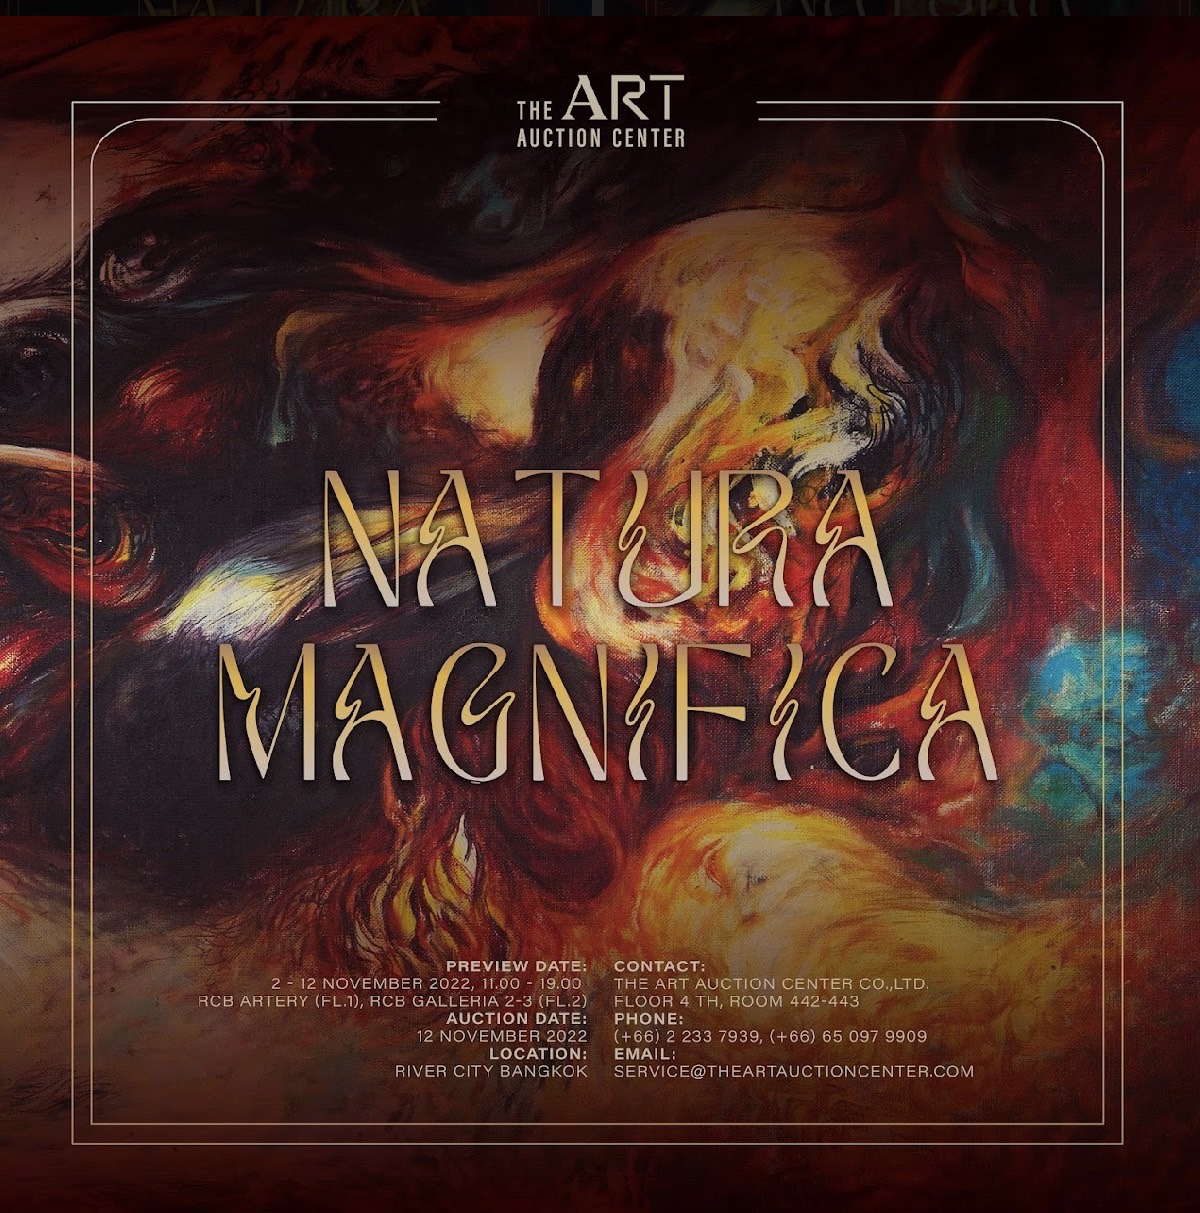 “ดิ อาร์ต อ๊อคชั่น เซ็นเตอร์” (The Art Auction Center) สร้างสีสันวงการศิลปะได้ตื่นตาอีกครั้ง จัดประมูลผลงานศิลปะครั้งใหญ่แห่งปี ภายใต้ชื่อ "NATURA MAGNIFICA”